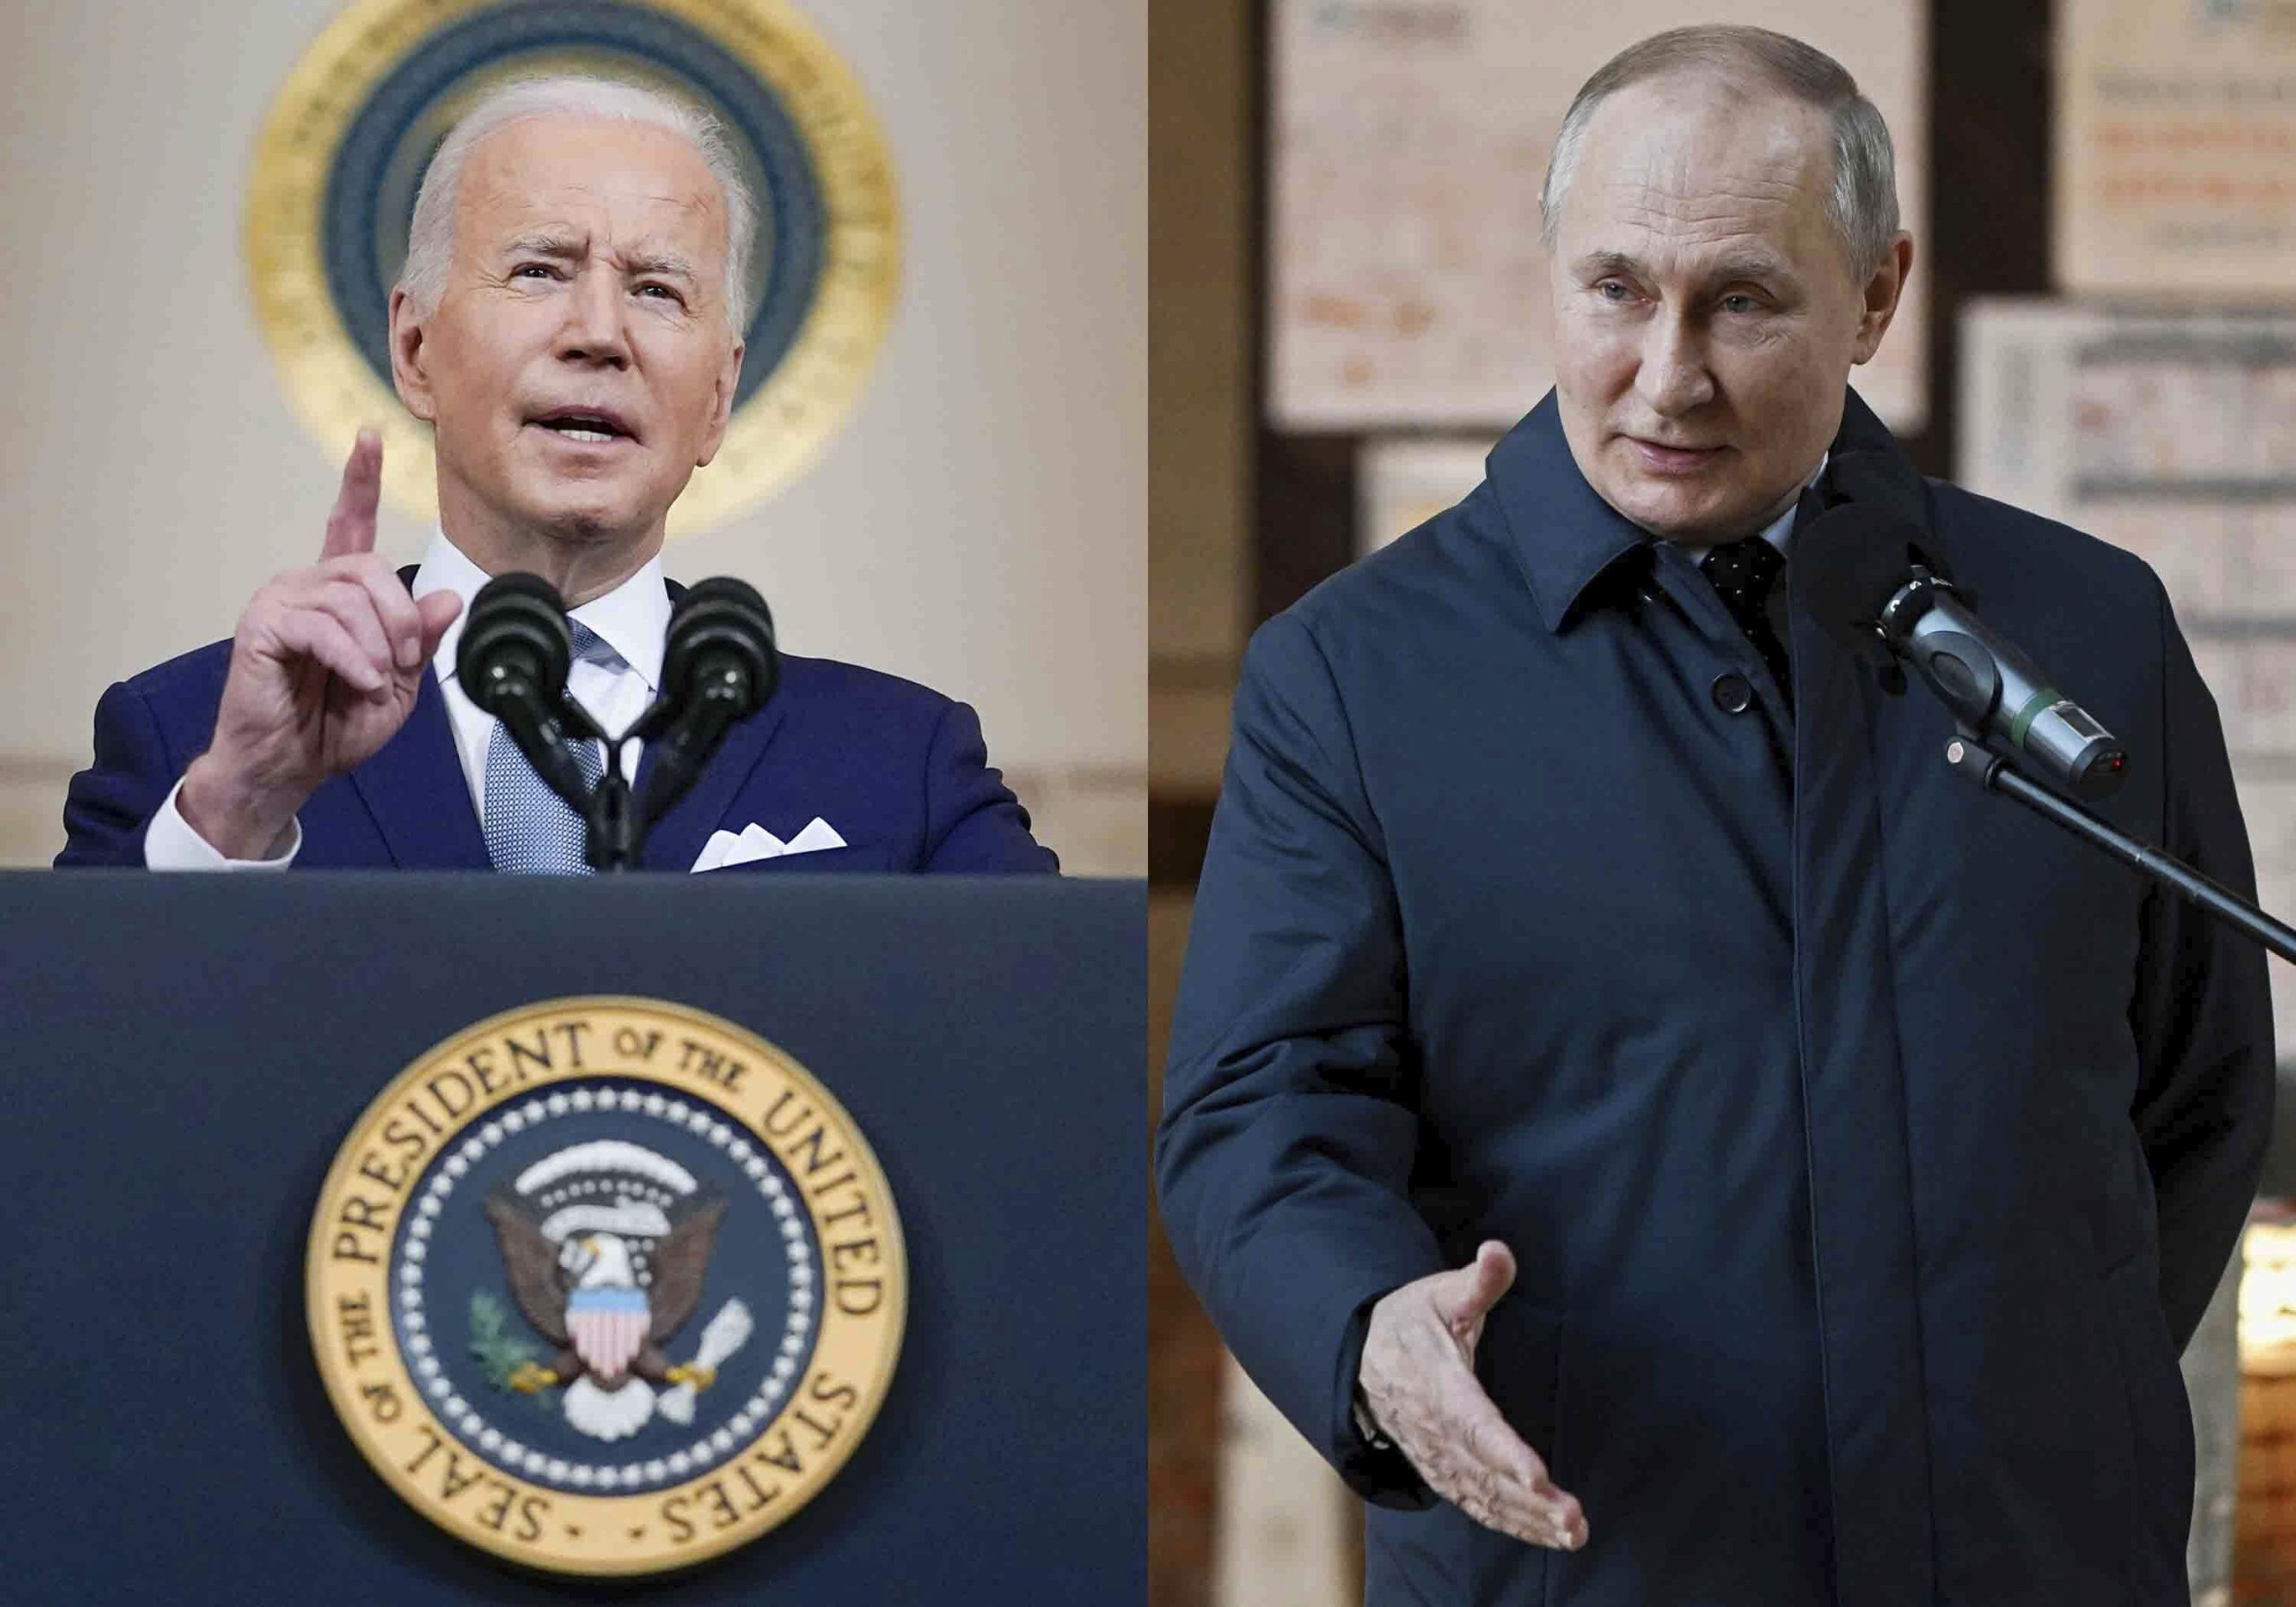 Biden won’t talk to Putin until Russia de-escalates: White House